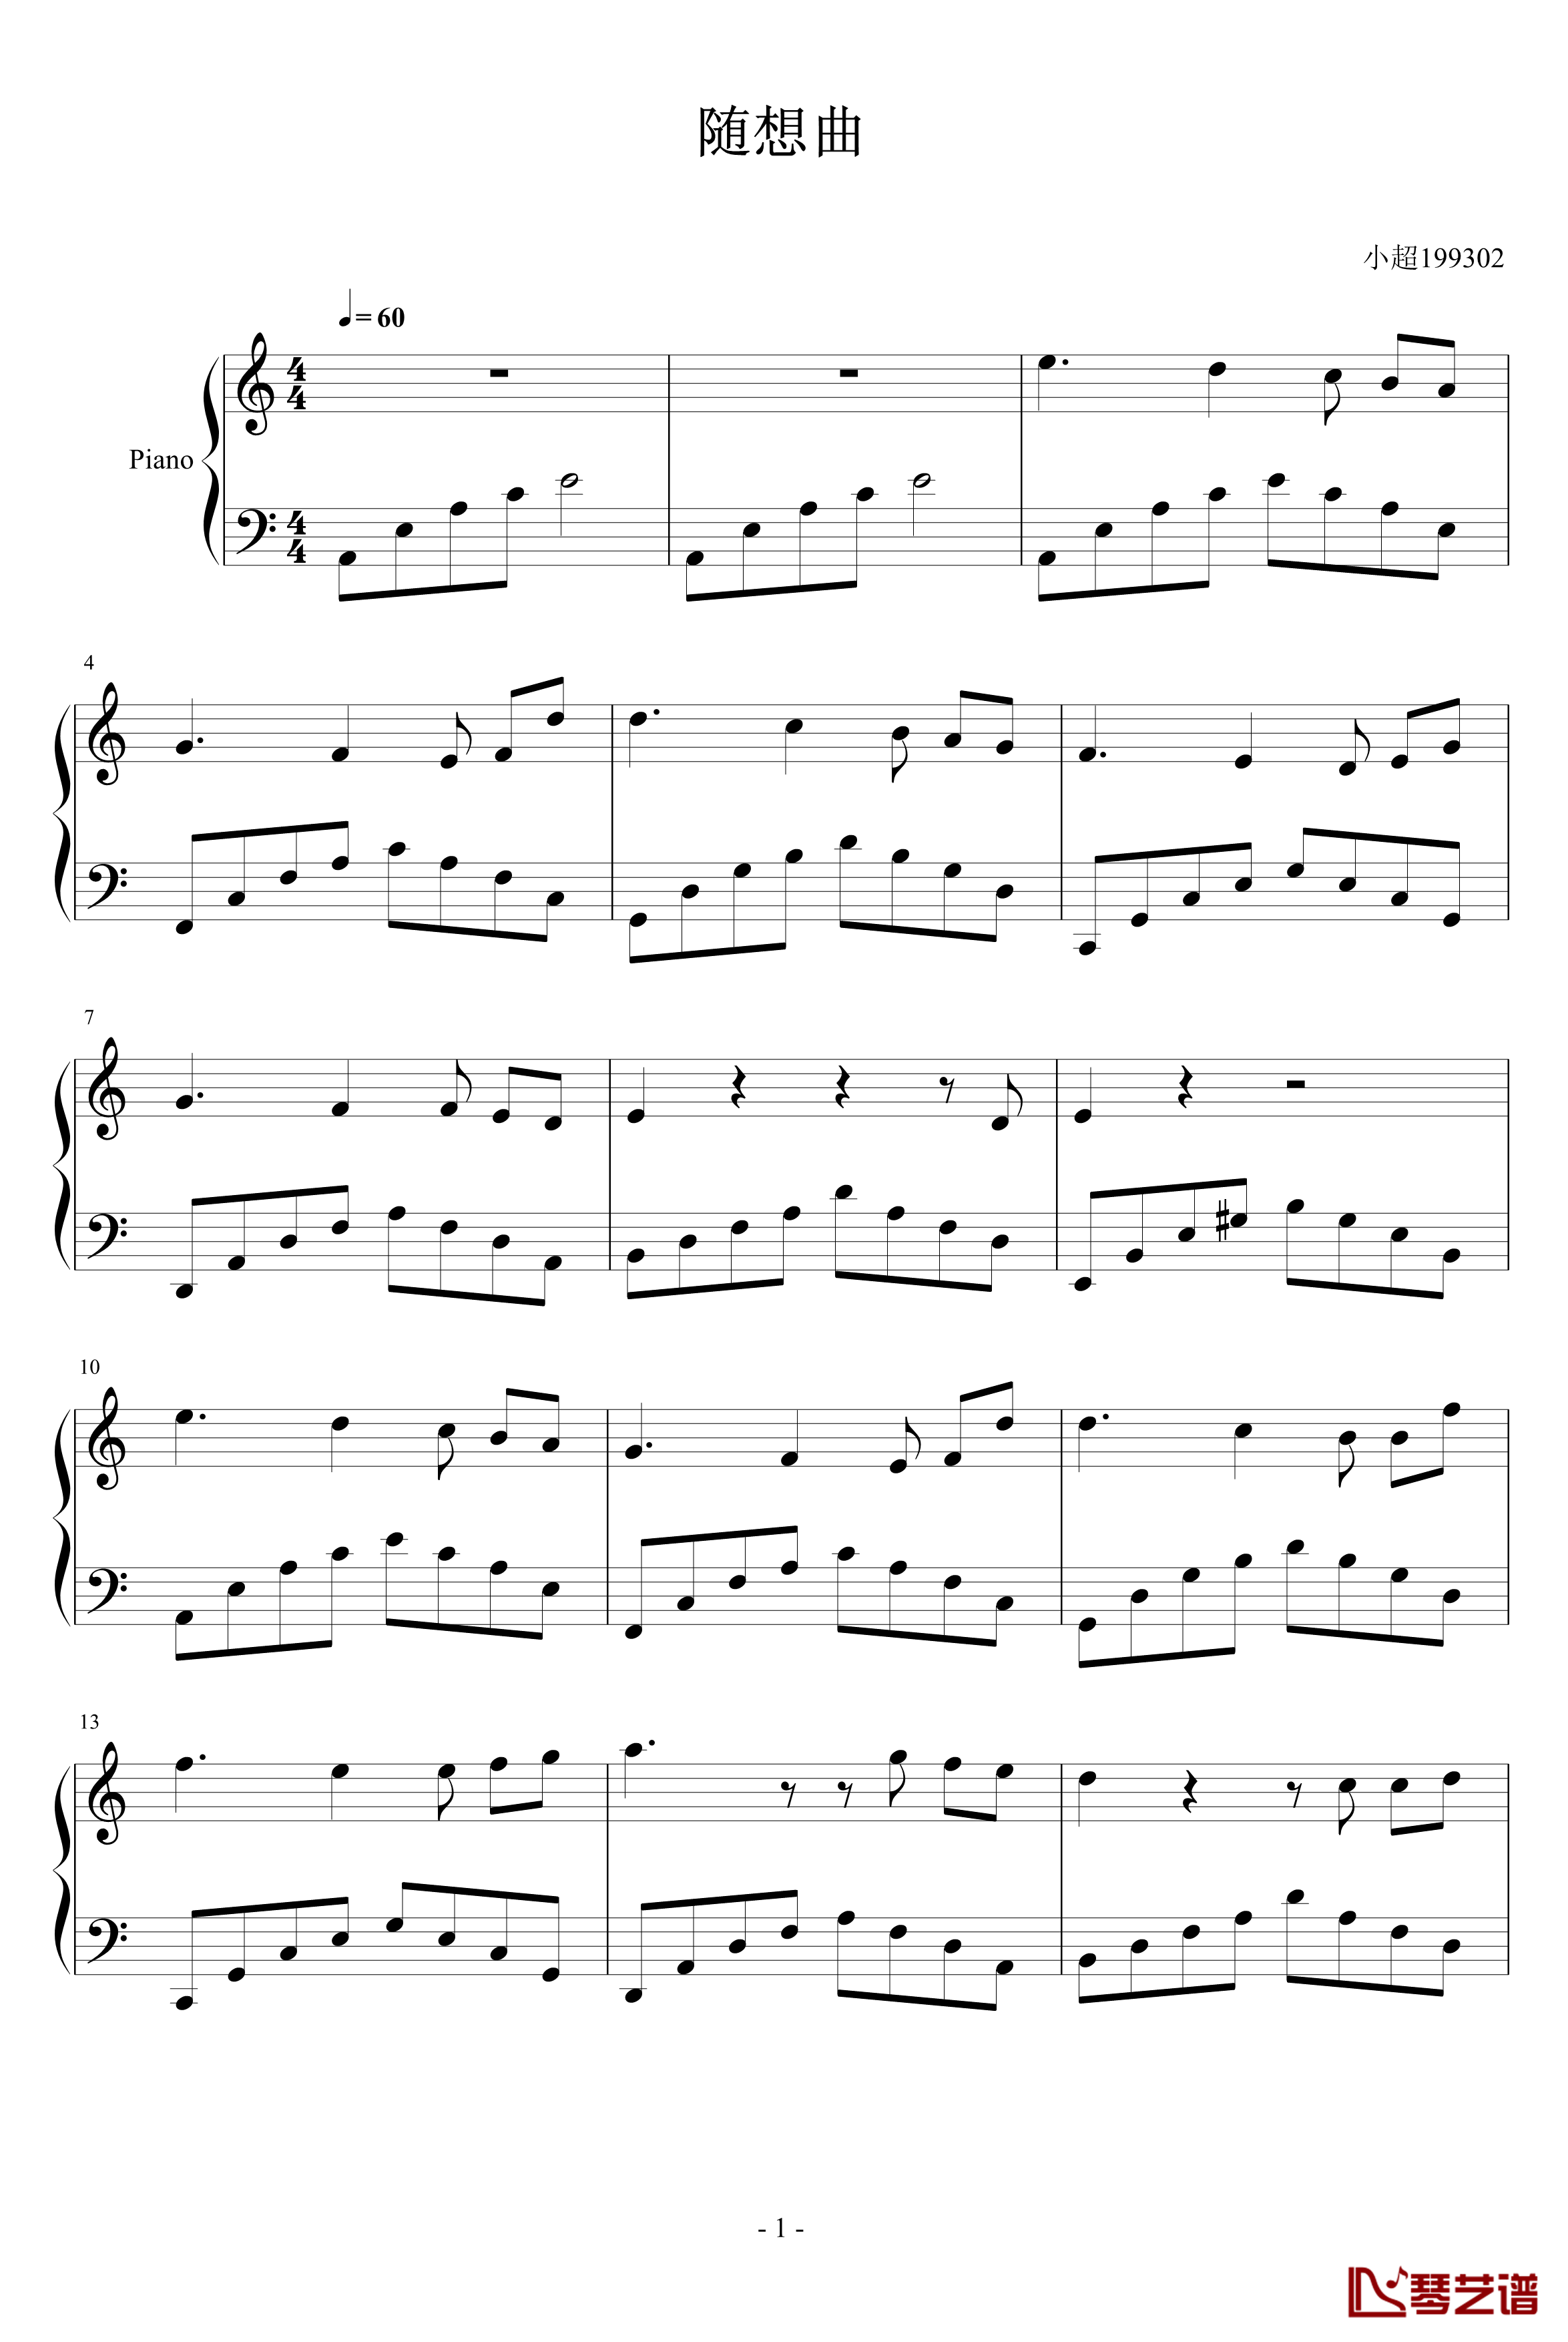 随想曲钢琴谱-小超1993021